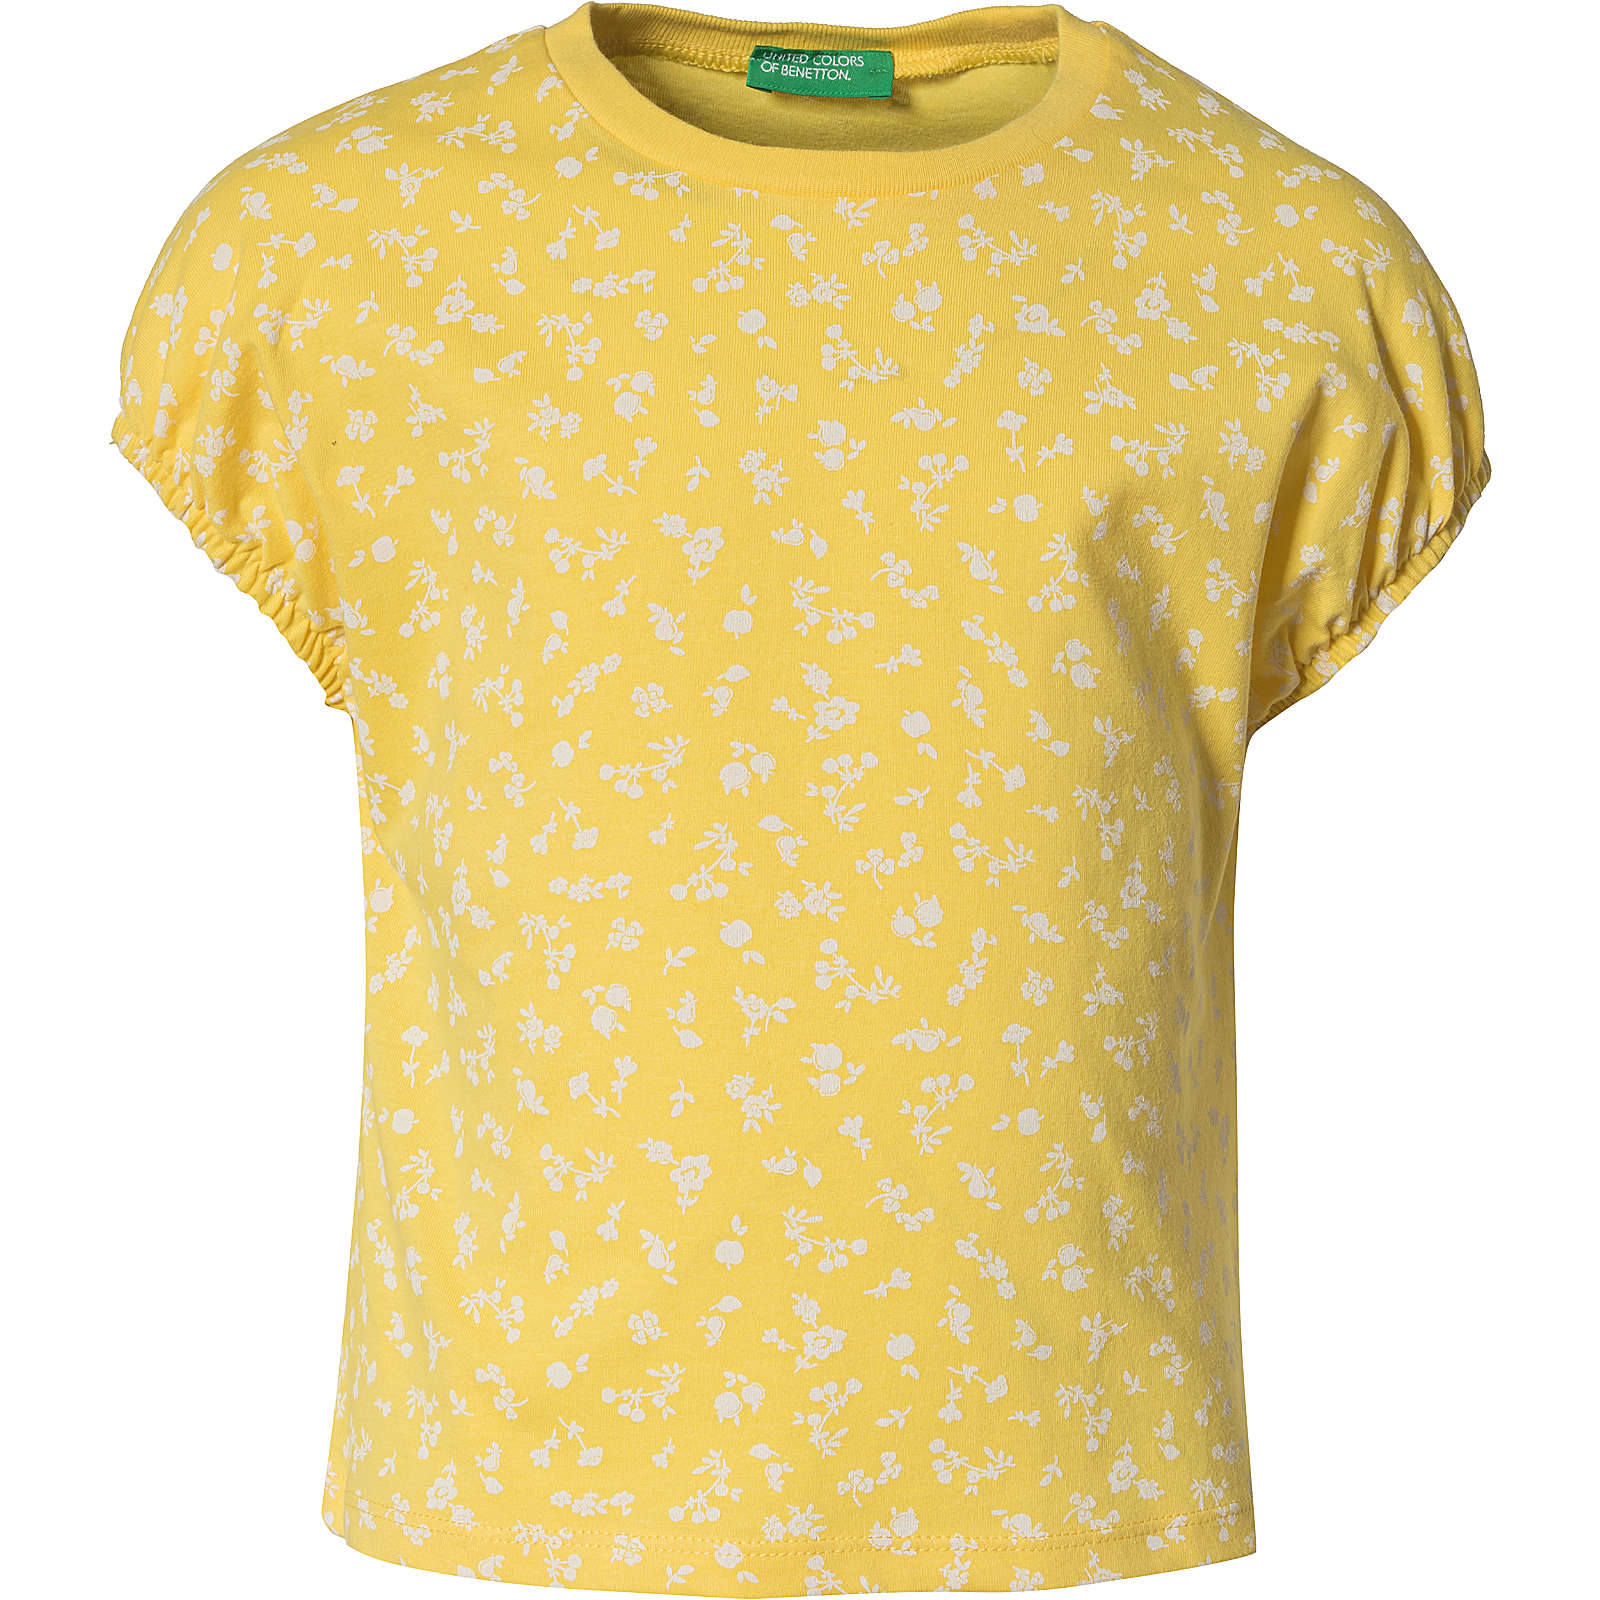 United Colors of Benetton T-Shirt für Mädchen gelb Mädchen Gr. 82